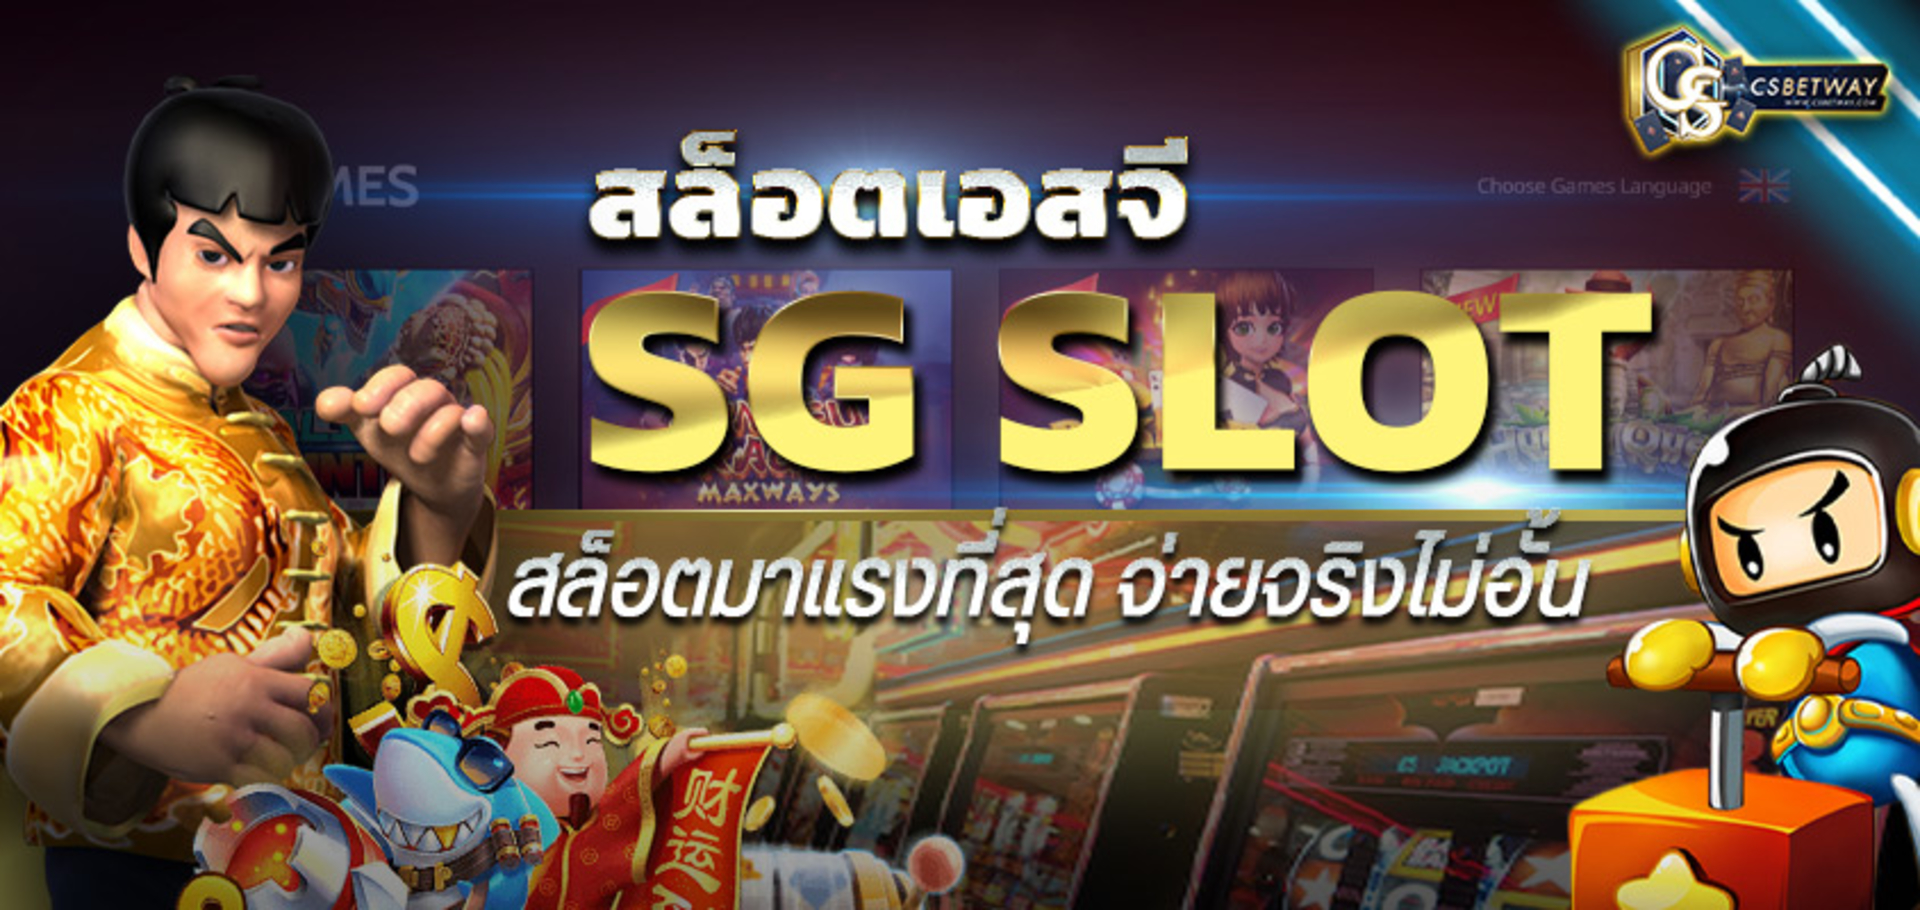 ทางเข้าเล่น Slot SG เกมสล็อต